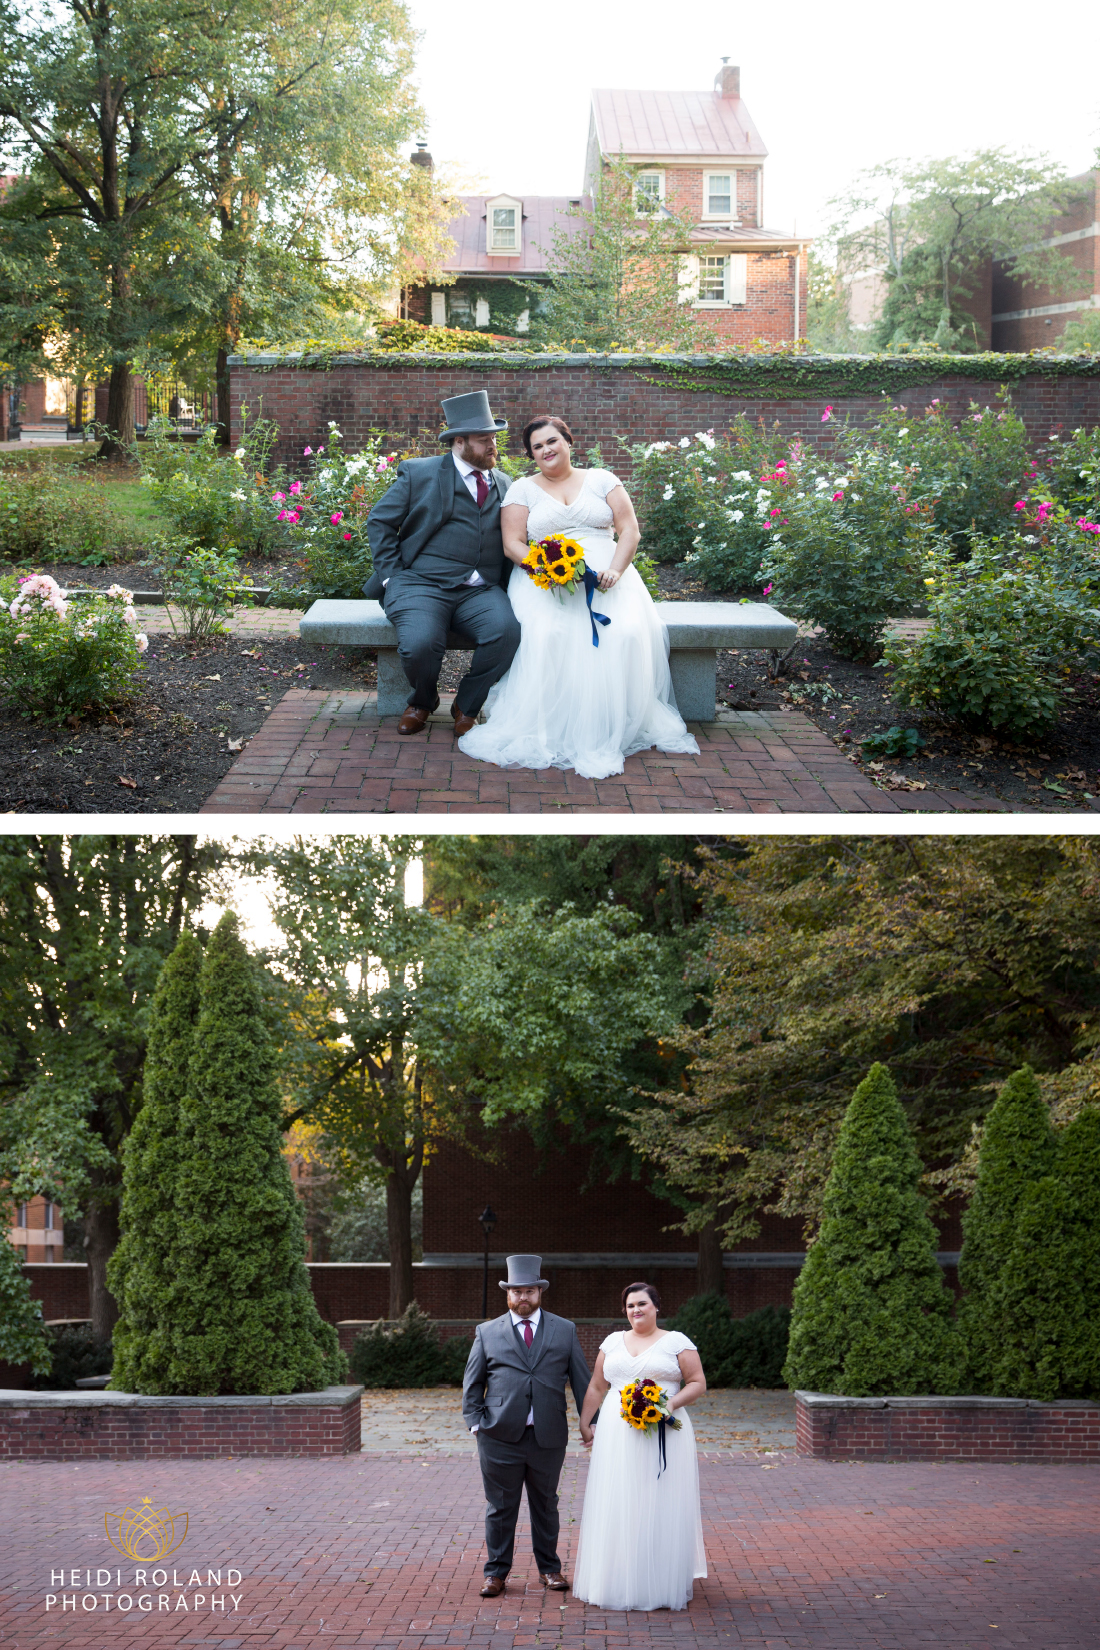 Wedding Day Photos in the Rose Garden